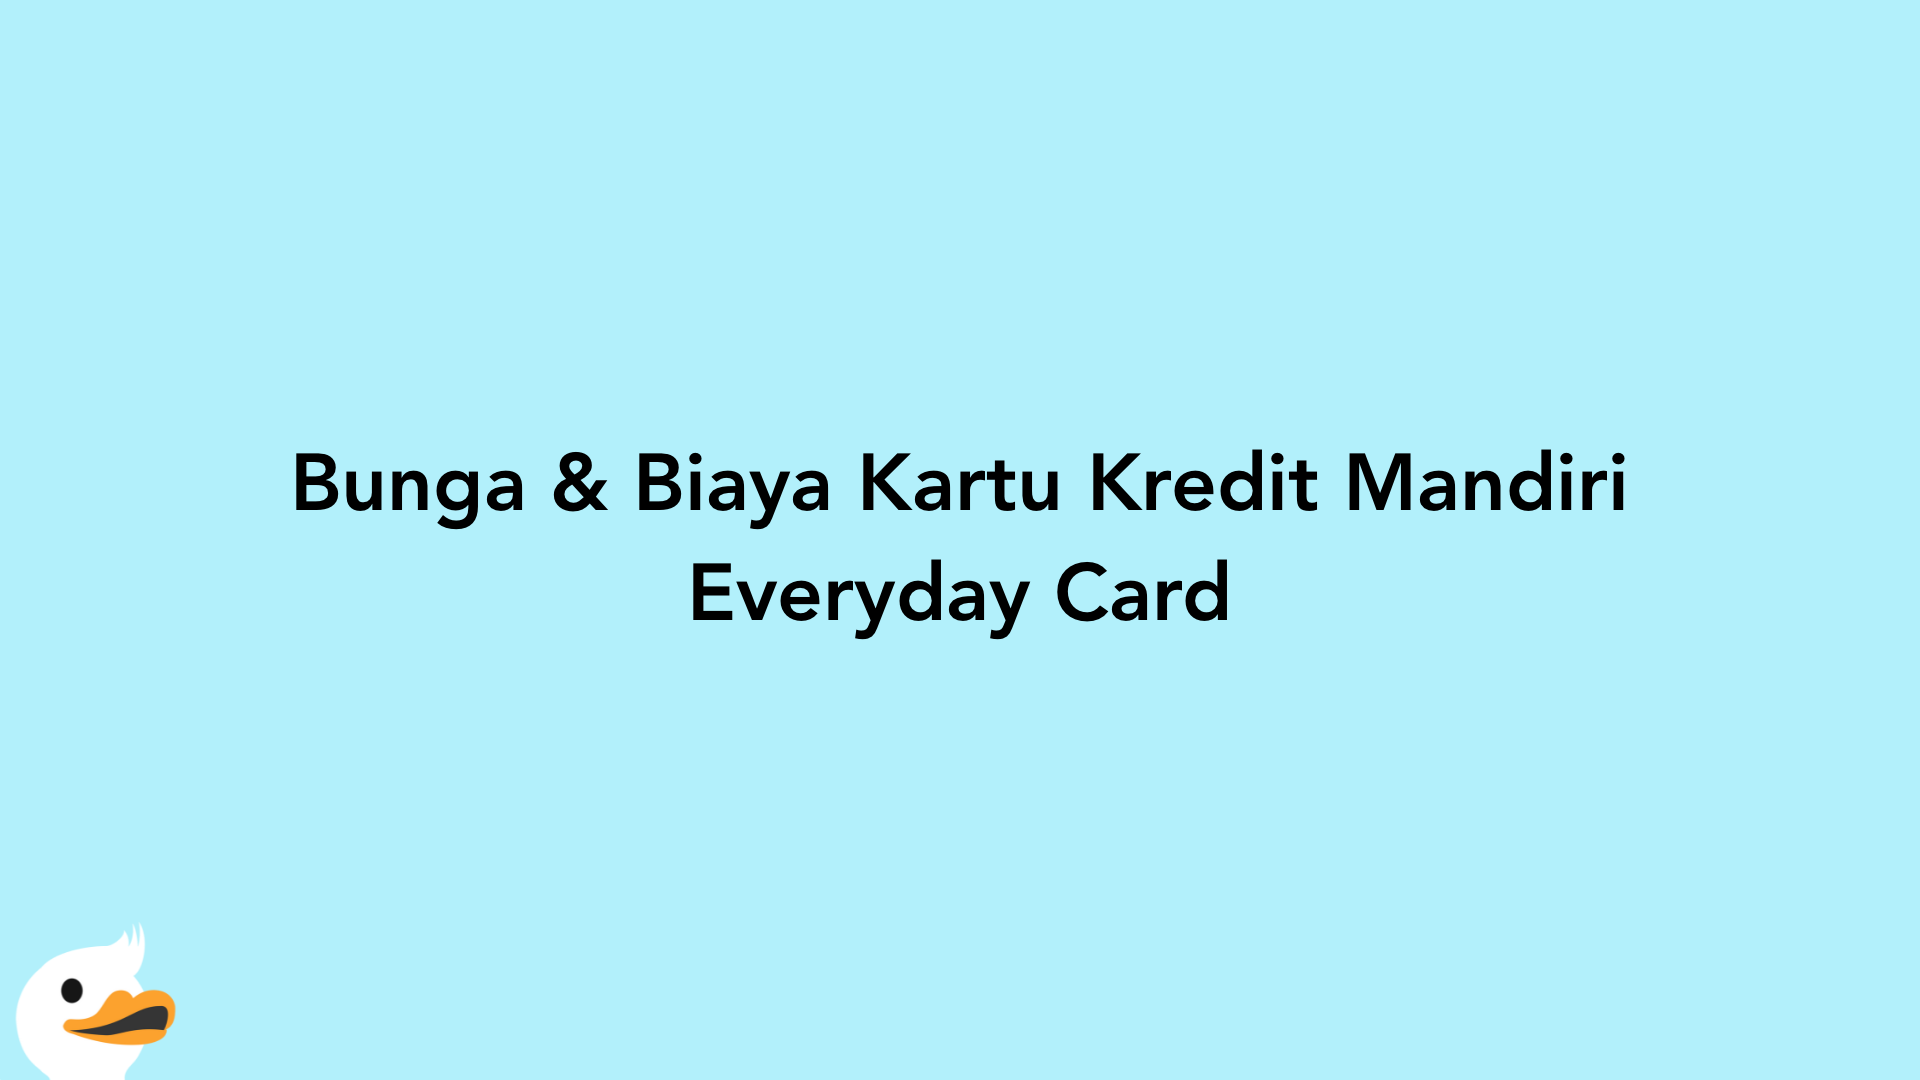 Bunga & Biaya Kartu Kredit Mandiri Everyday Card